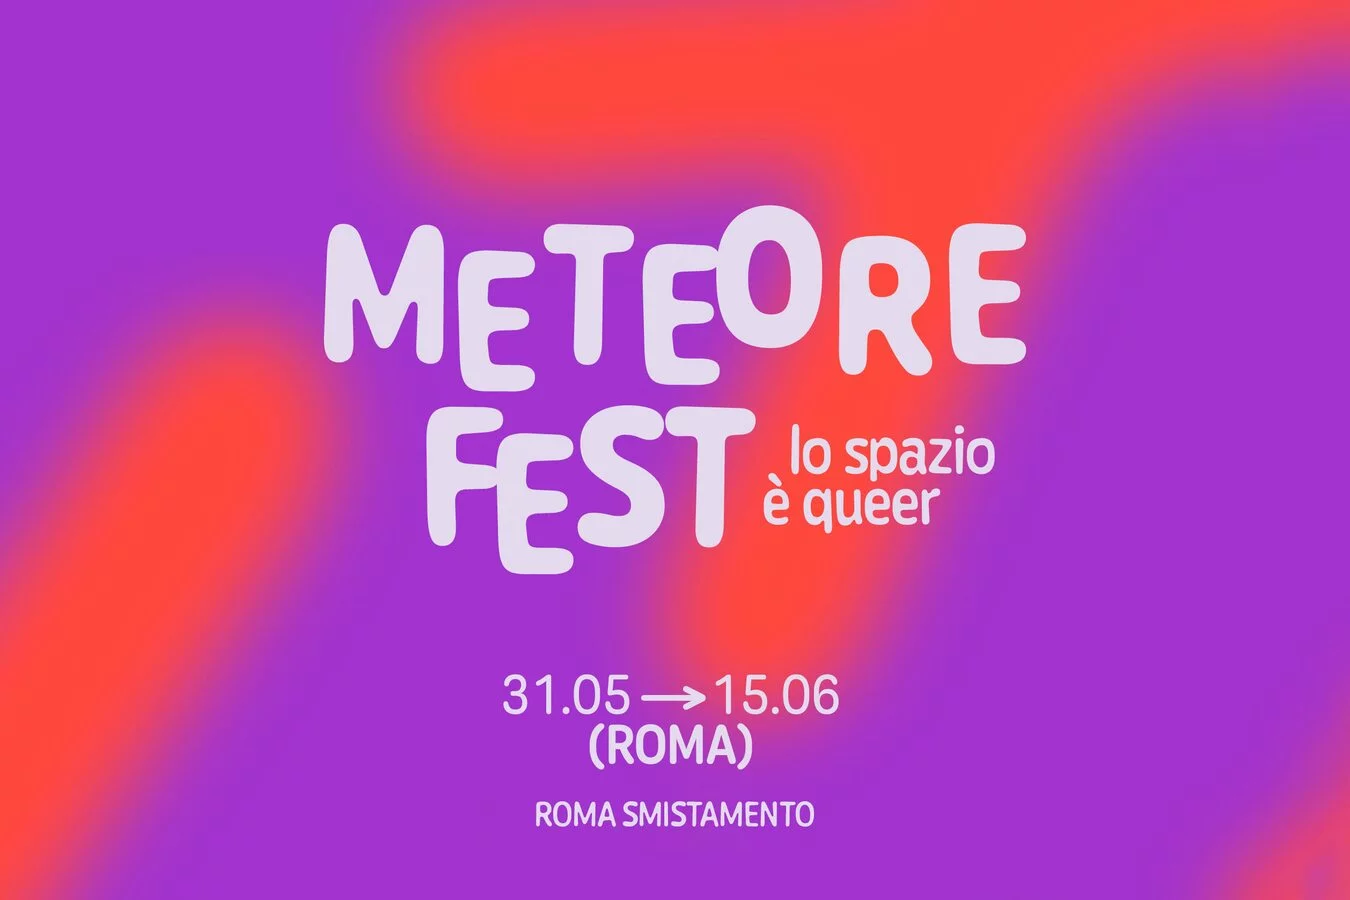 Meteore Fest: lo spazio è queer - Roma